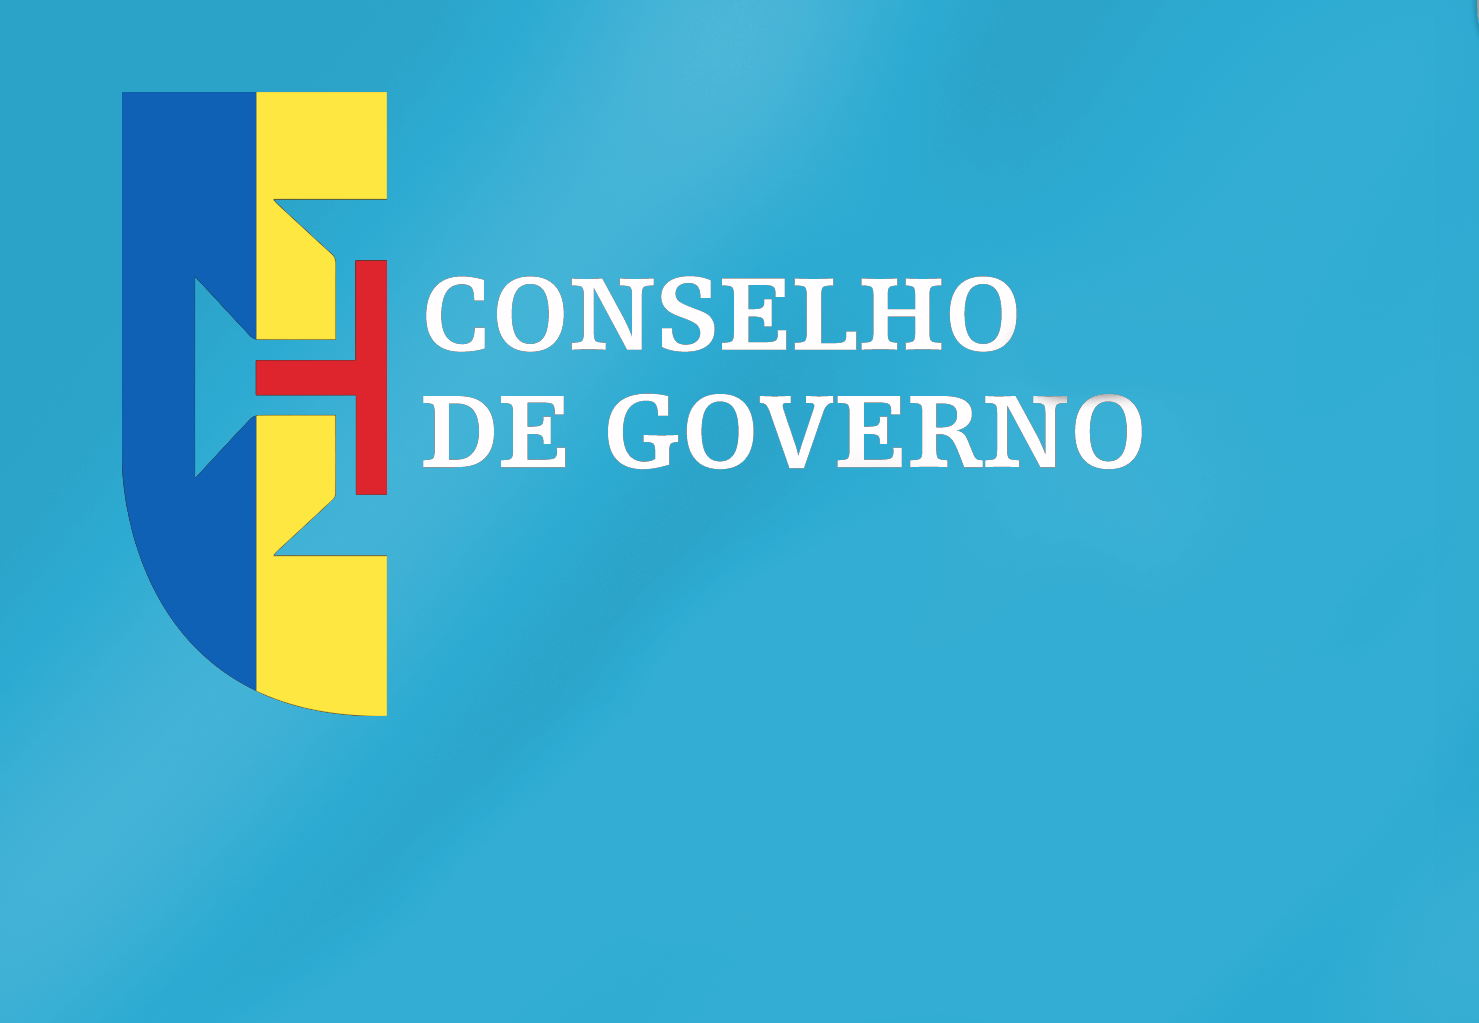 Conclusões Conselho de Governo - 23 de setembro 2021